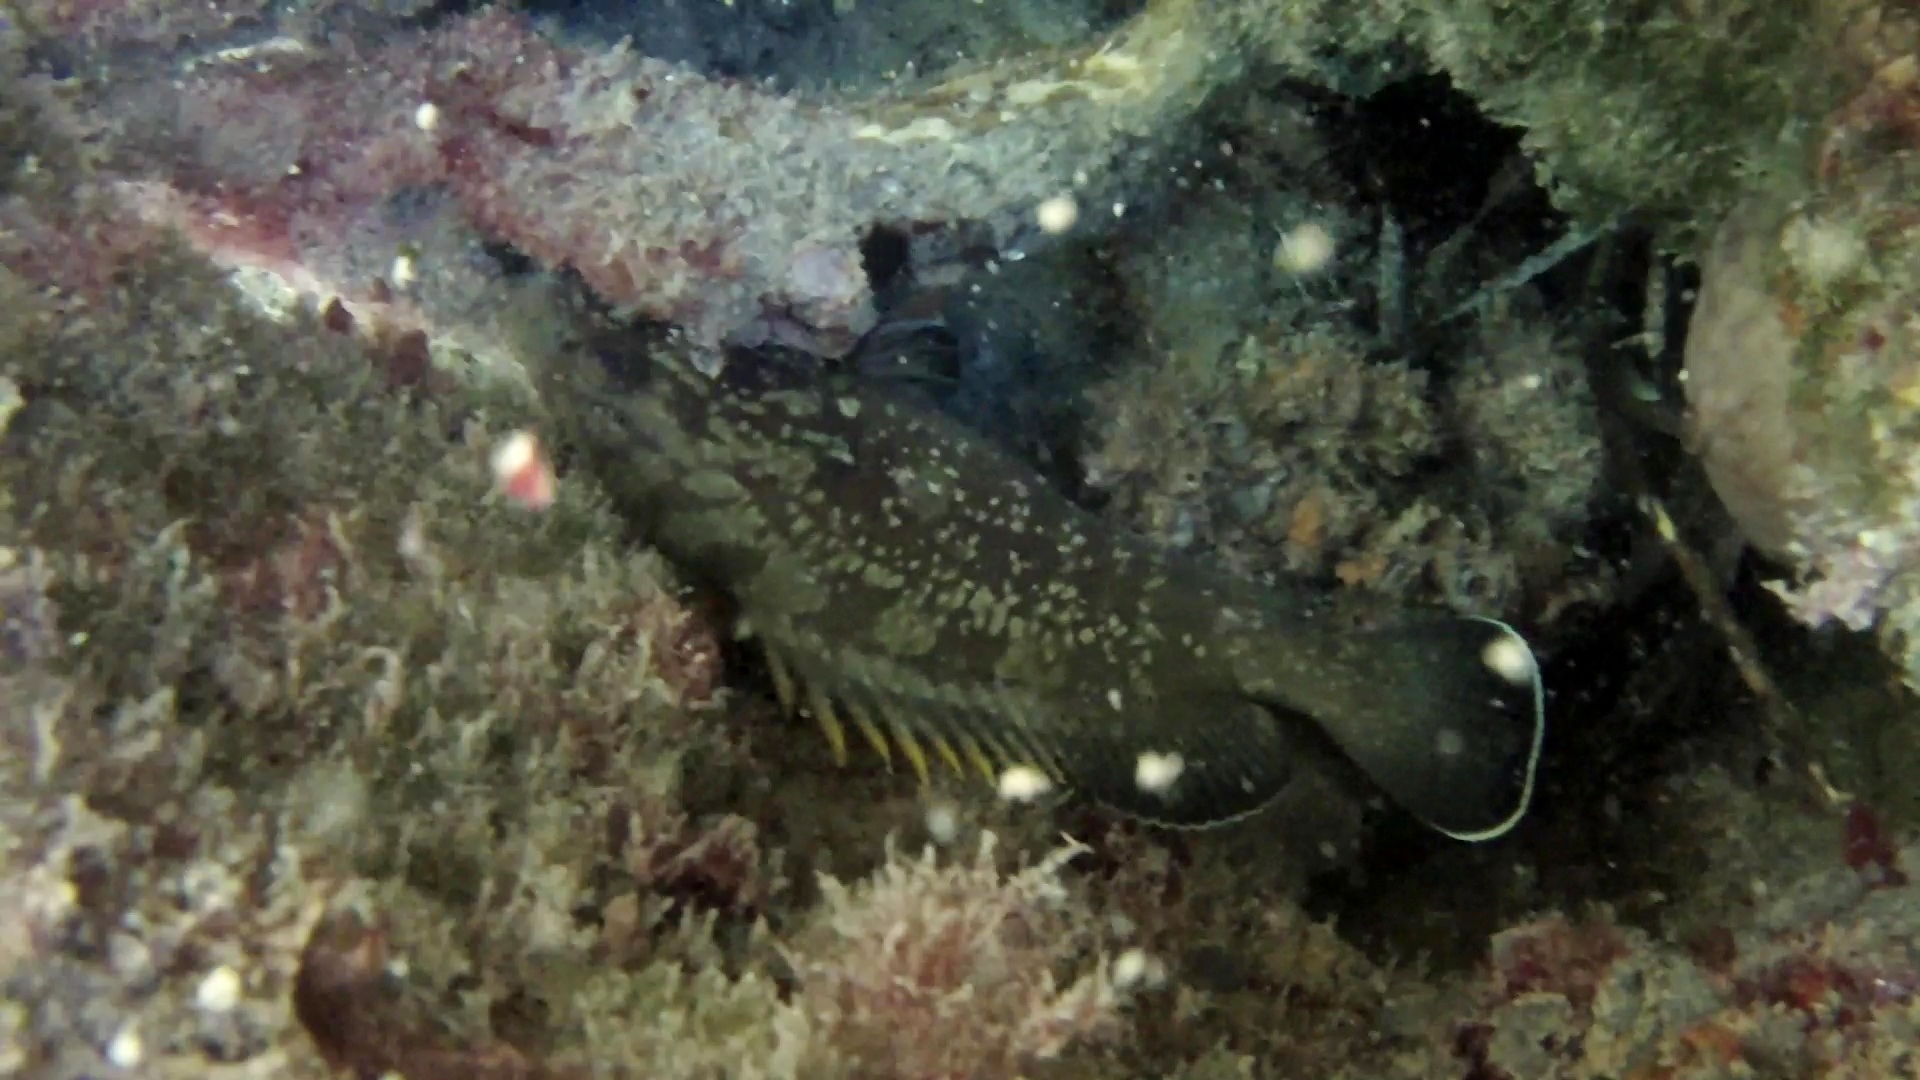 Cernia Bruna - Epinephelus marginatus - The Grouper of Mediterranean Sea - intotheblue.it